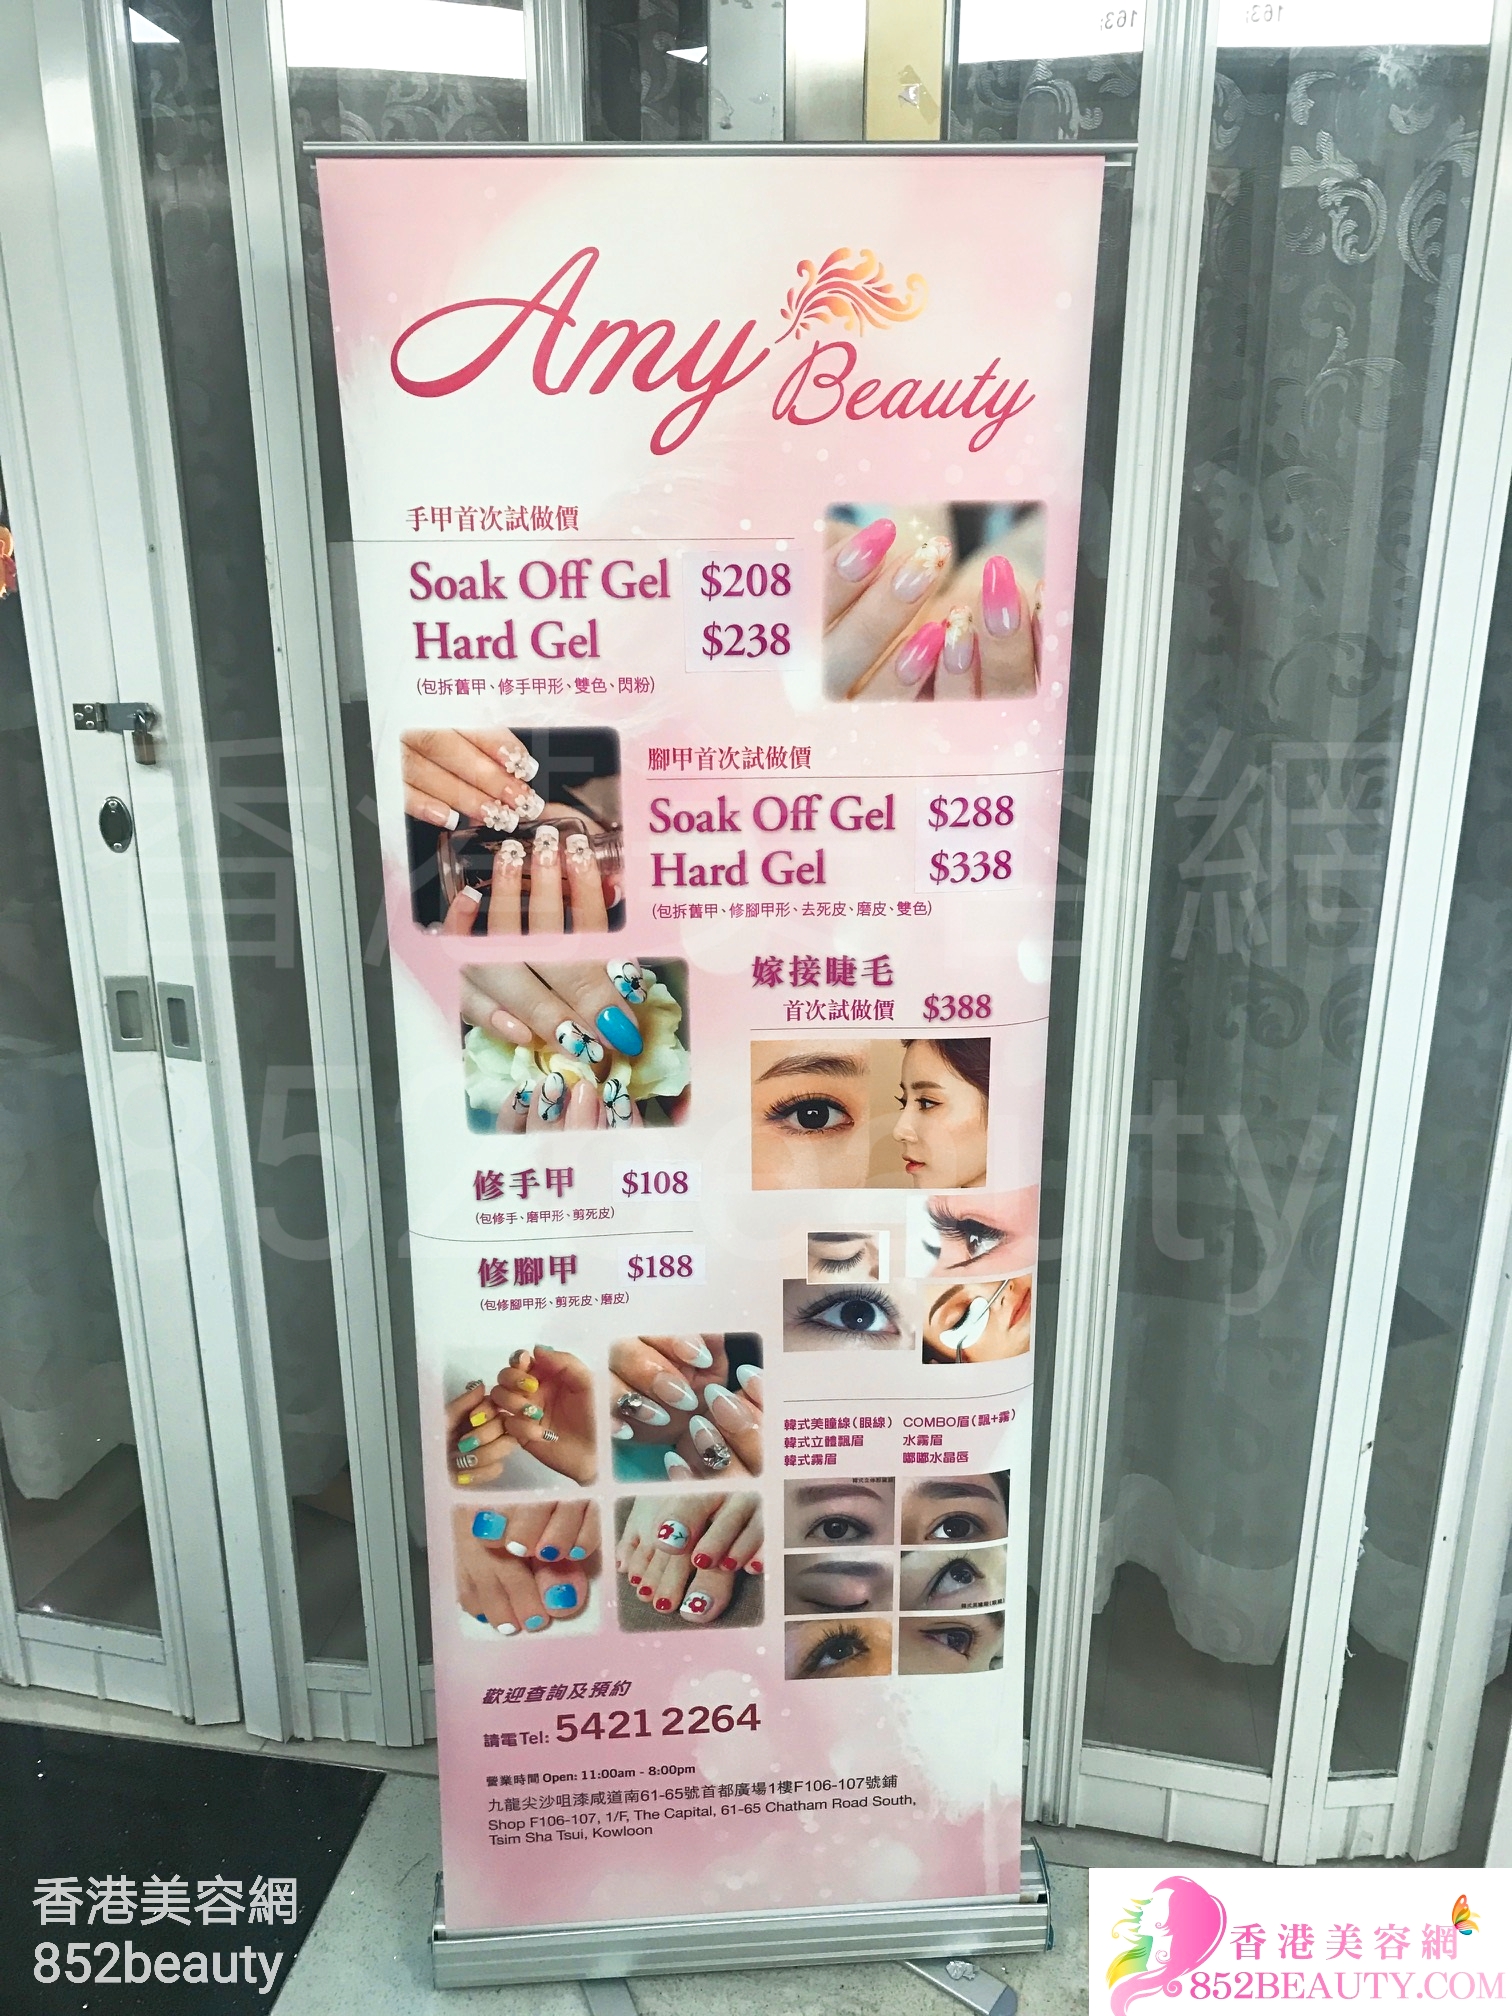 香港美容網 Hong Kong Beauty Salon 美容院 / 美容師: Amy Beauty